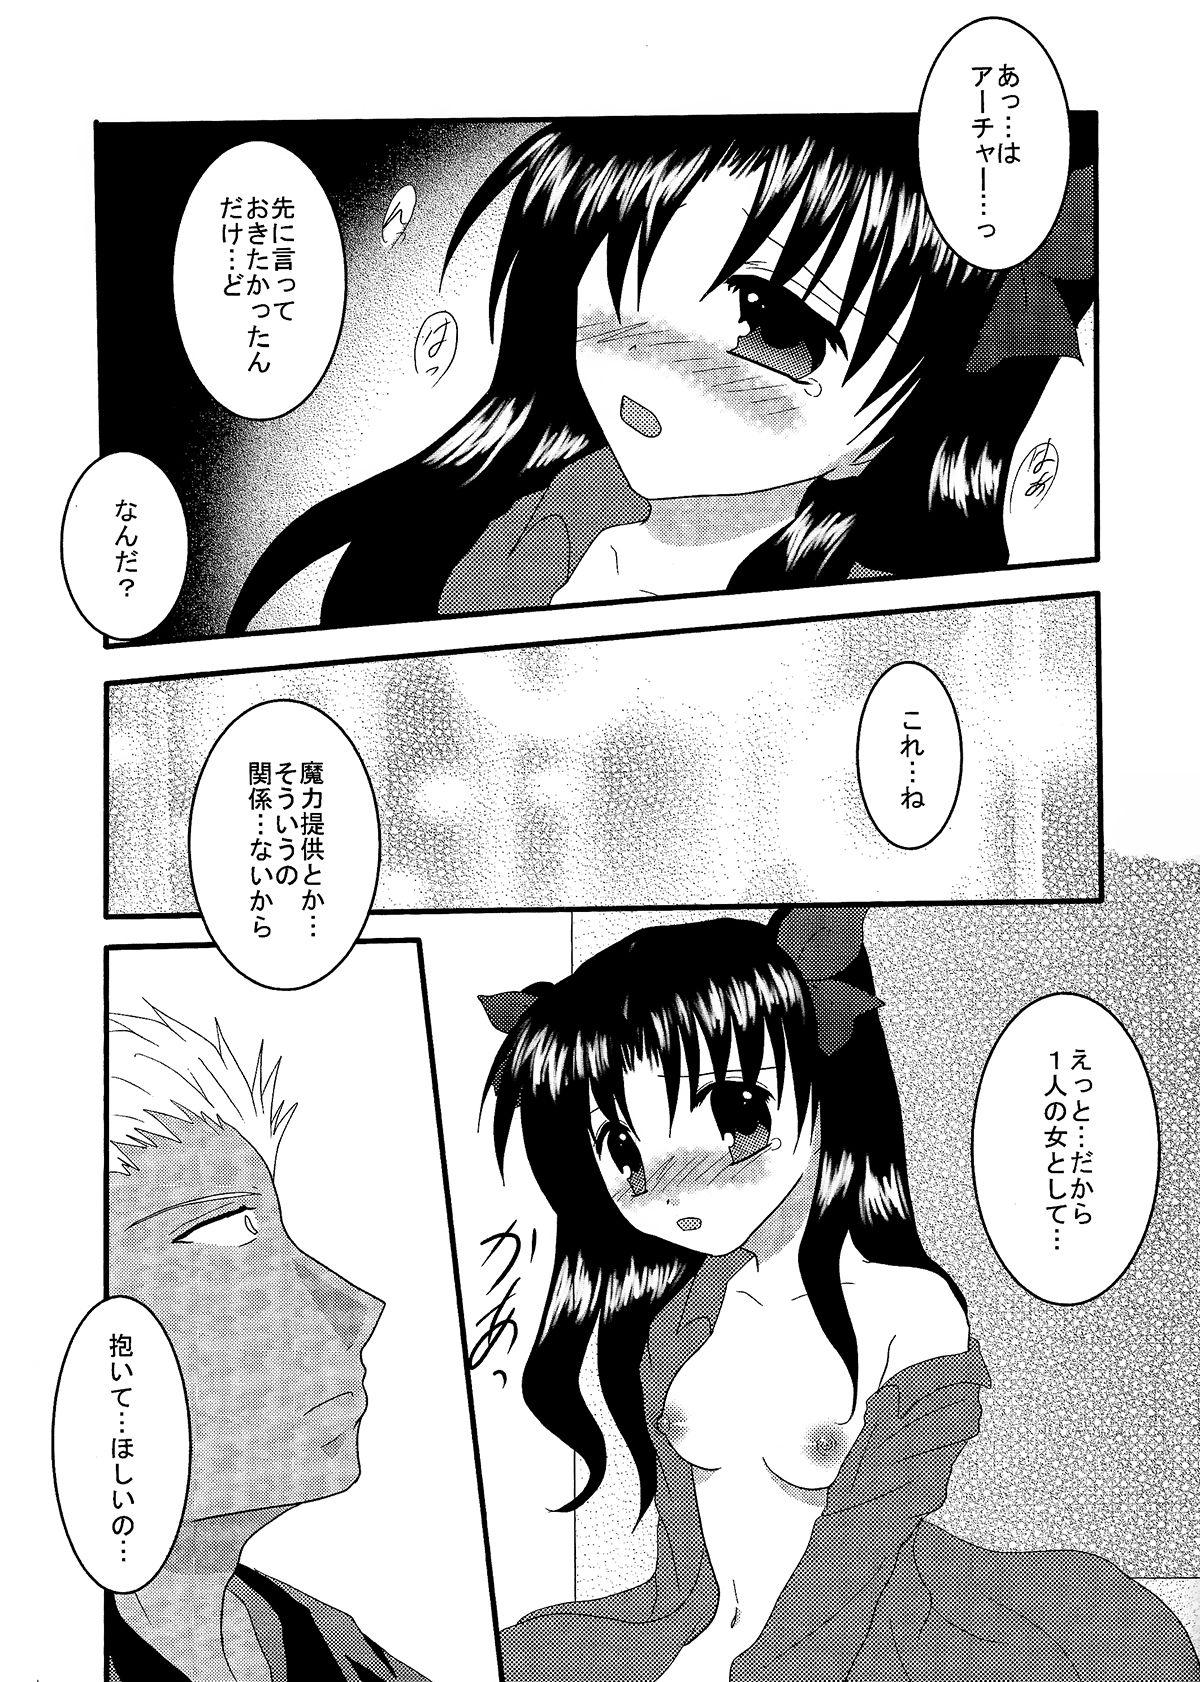 Cum Swallow Gensou Ichiya - Fate stay night Whipping - Page 12